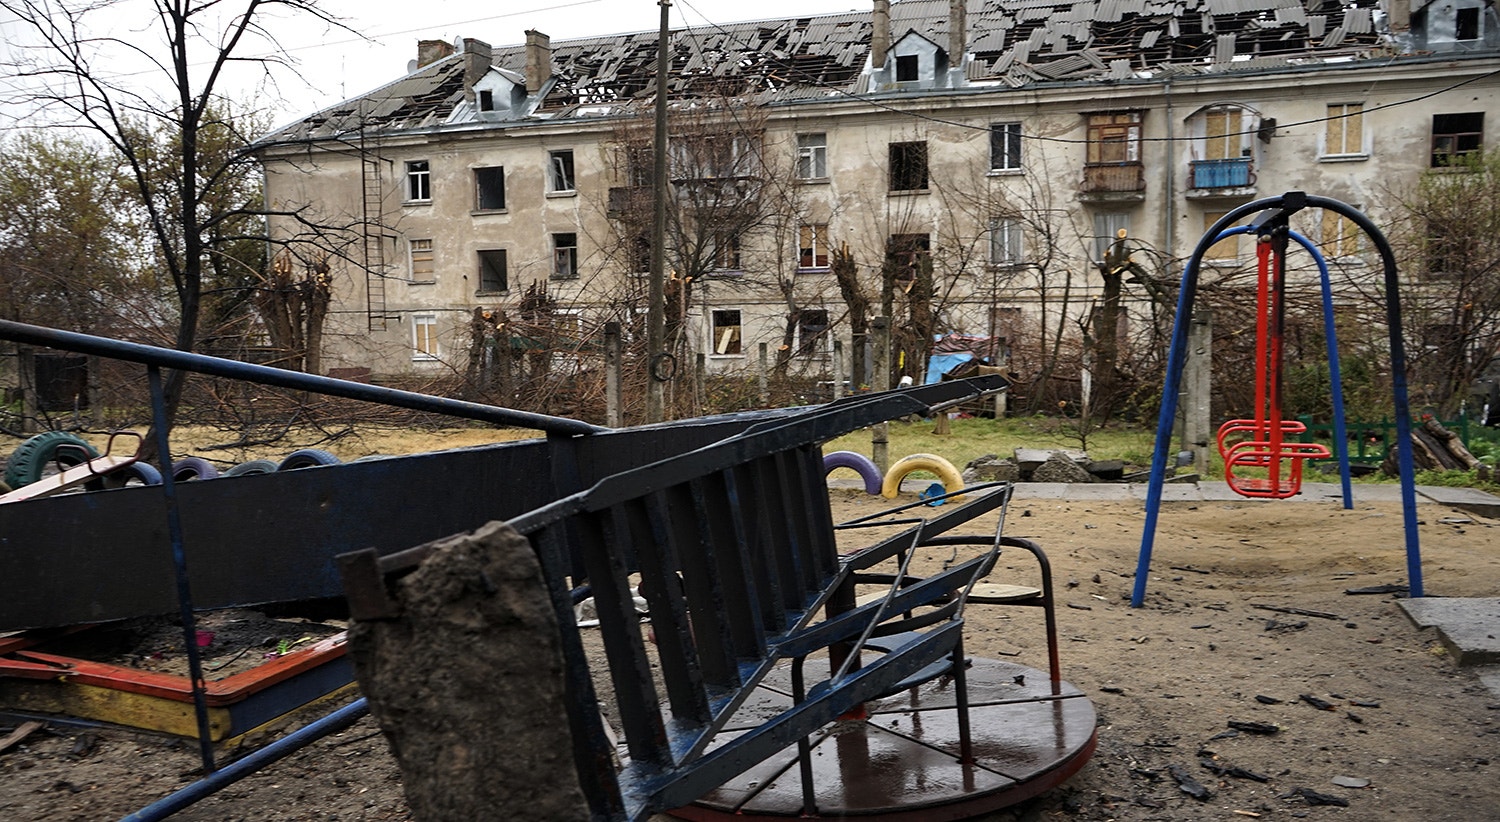  O parque infantil de um bairro em Mykolaiv, que foi bombardeado por m&iacute;sseis russos.  